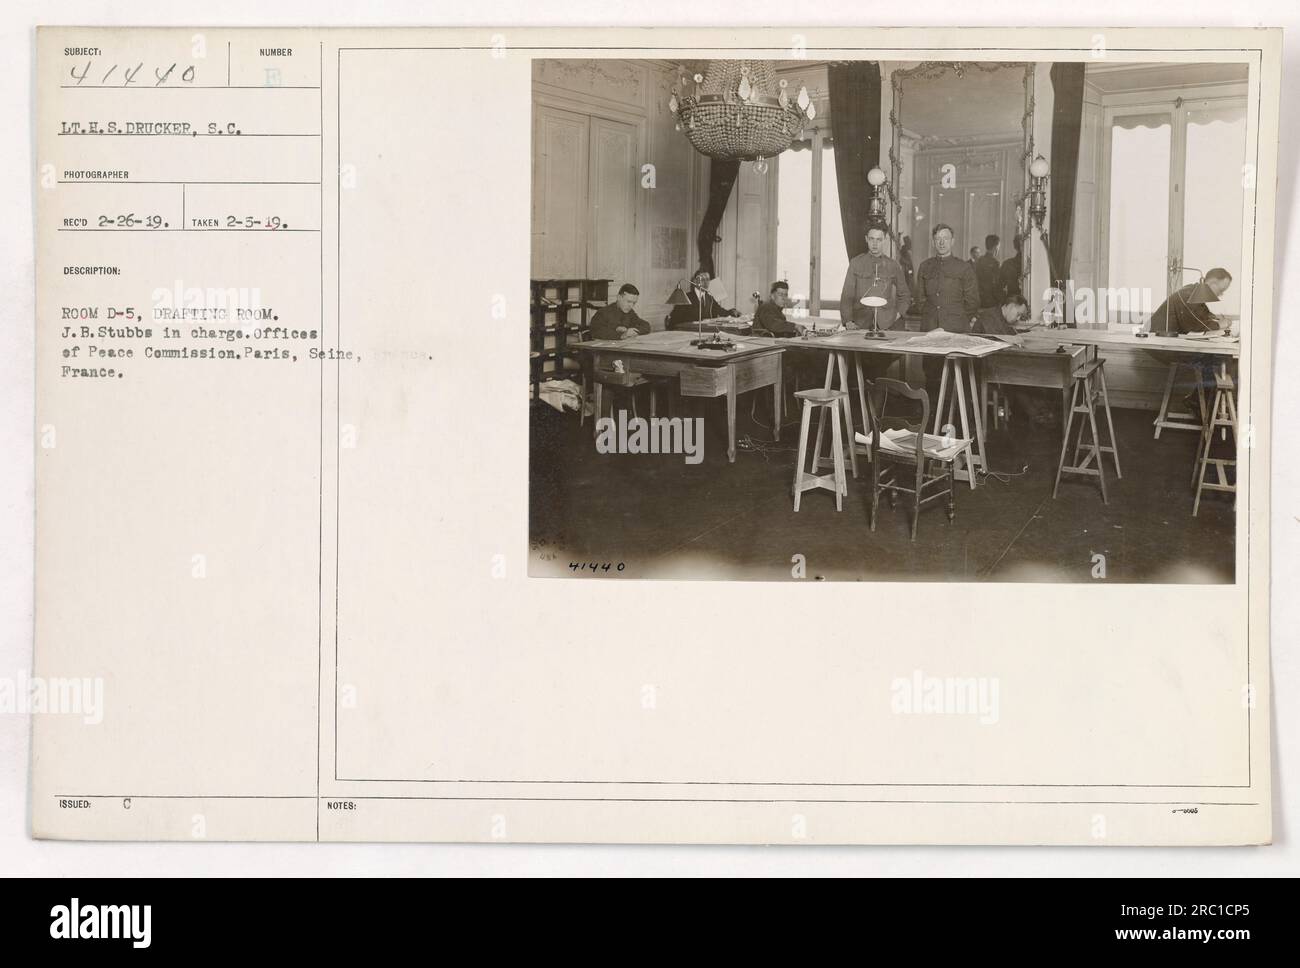 Tenente E.S. Drucker, un fotografo, ha scattato questa foto il 5 febbraio 1919, ed è stata ricevuta il 26 febbraio 1919. L'immagine mostra la sala D-5, la sala di disegno, gestita da J.B. Stubbs. Questa sala si trova negli uffici della commissione per la pace a Parigi, Senna, Francia. Foto Stock